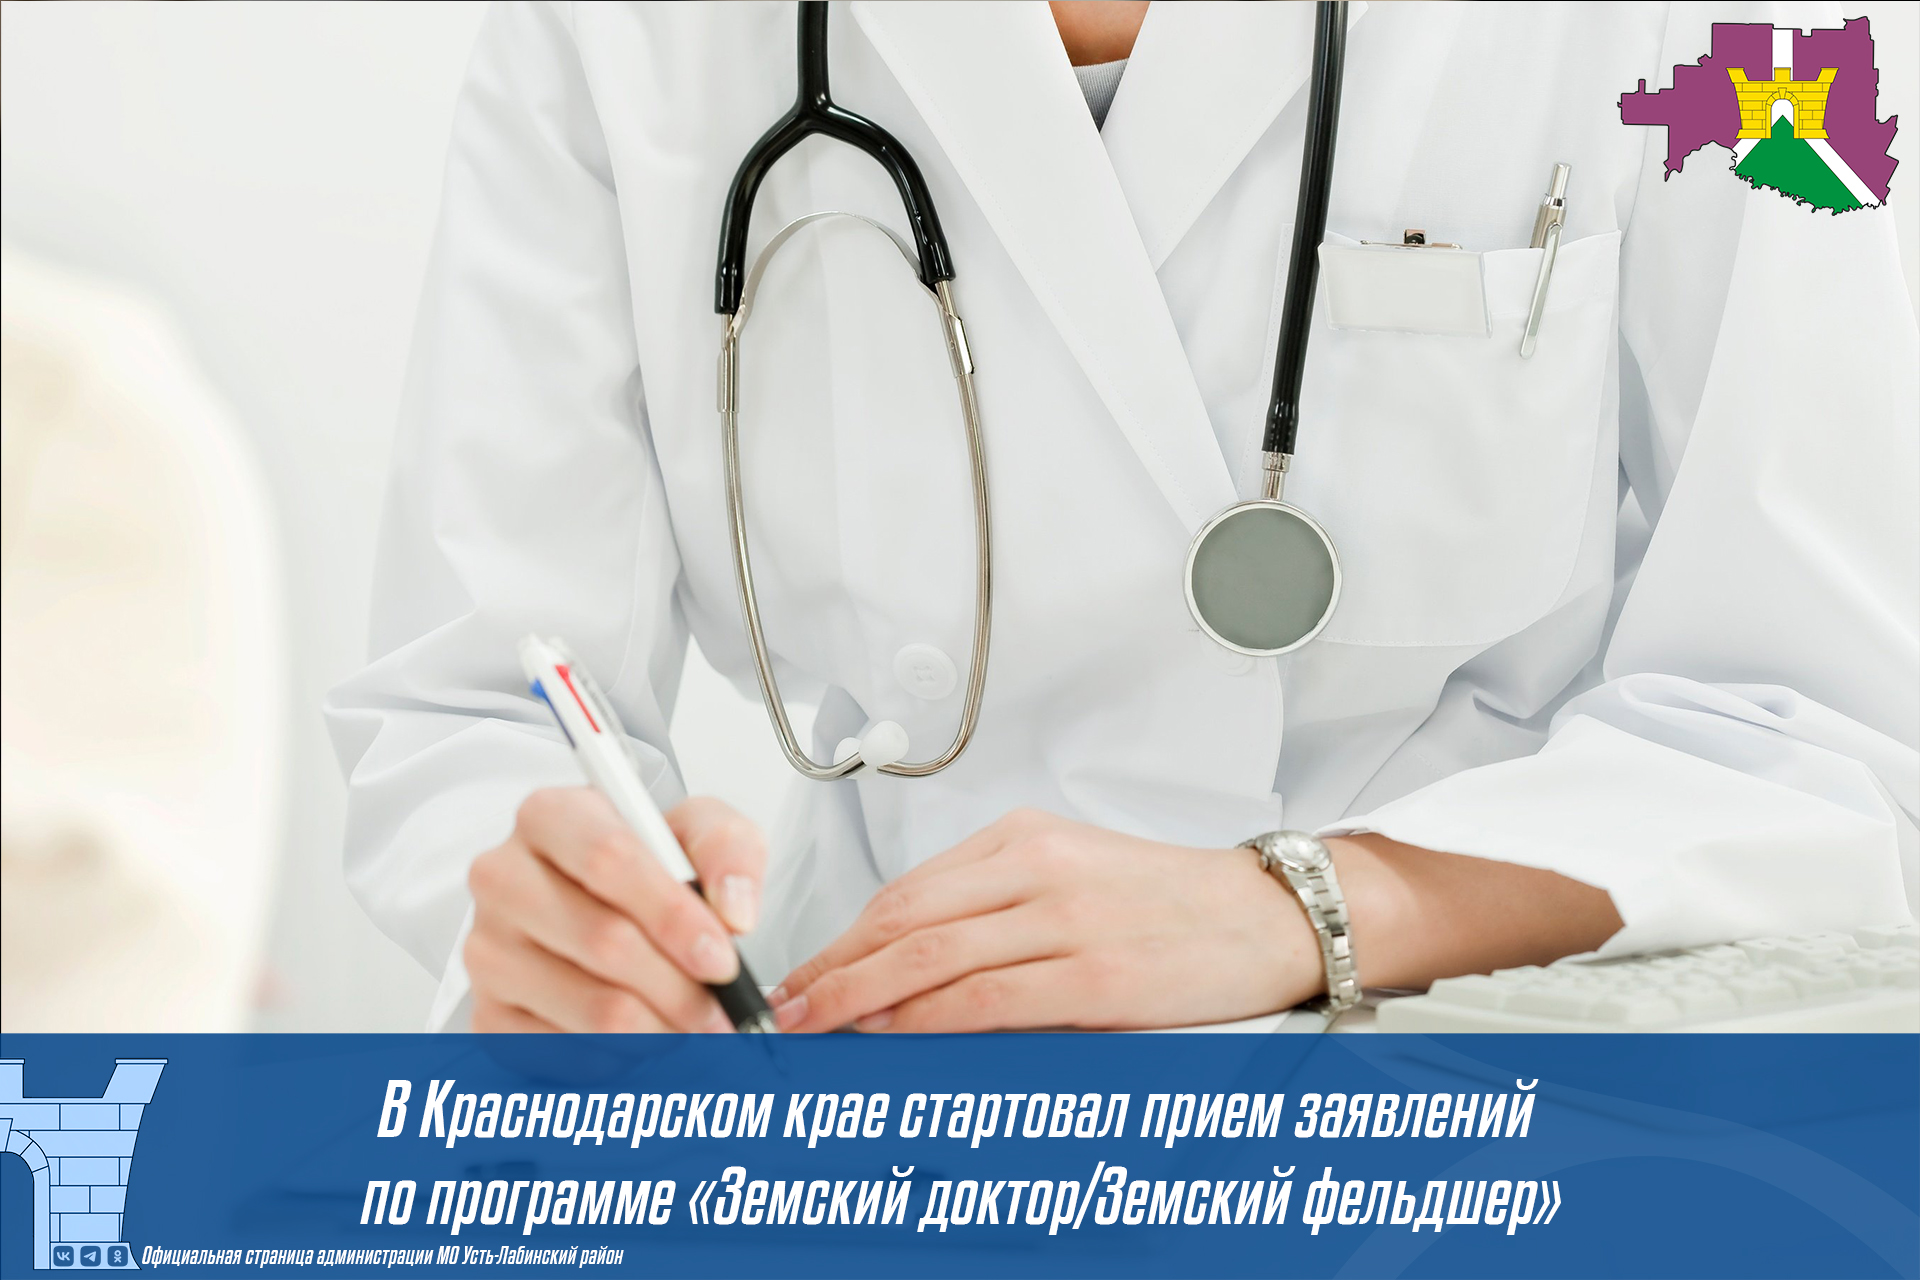 В Краснодарском крае стартовал прием заявлений по программе «Земский доктор/Земский фельдшер»